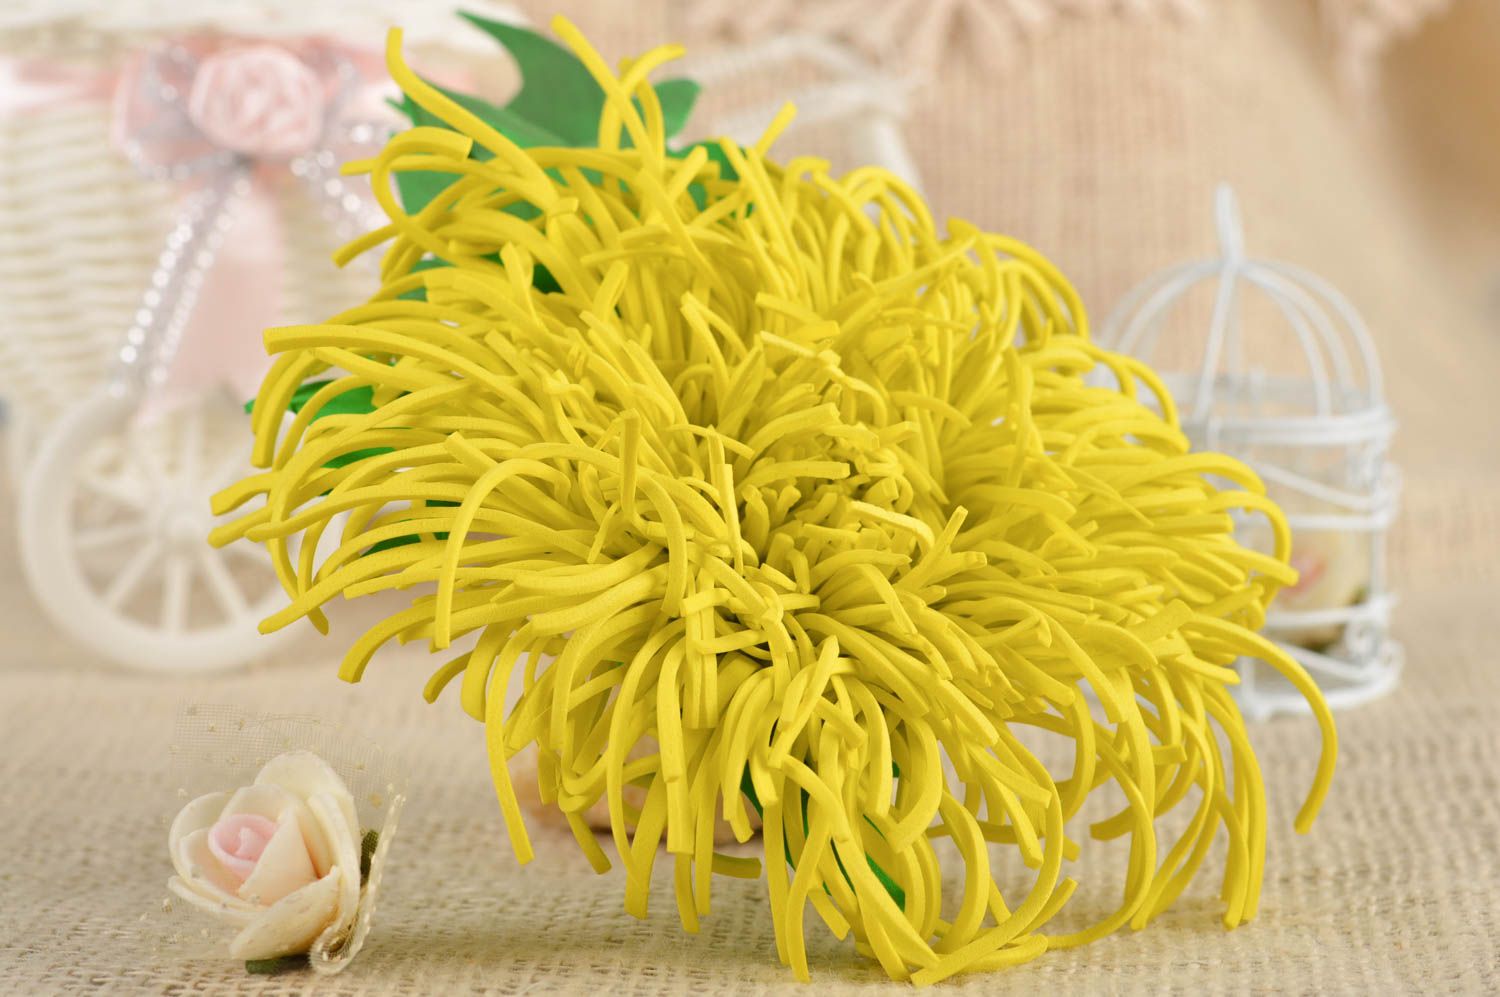 Брошь ручной работы заколка для волос цветок из фоамирана желтого цвета фото 1